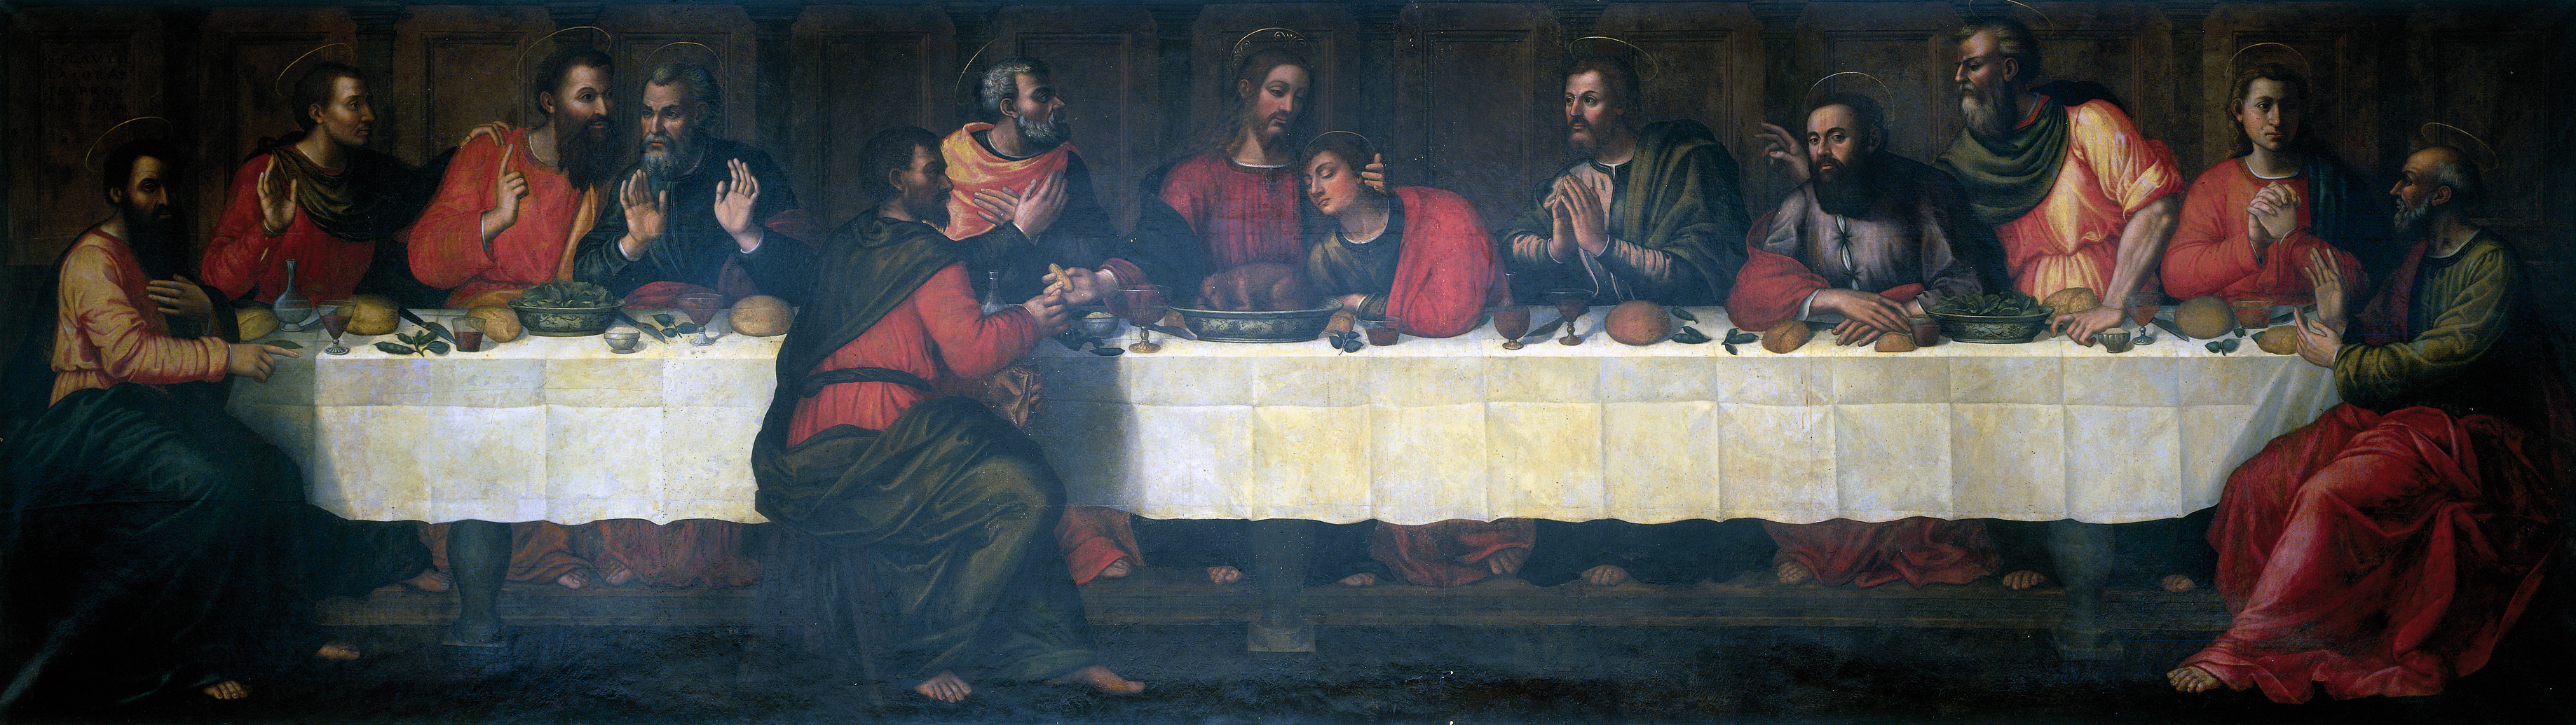 Das letzte Abendmahl by Plautilla Nelli - 16. Jahrhundert  Advancing Women Artists Foundation